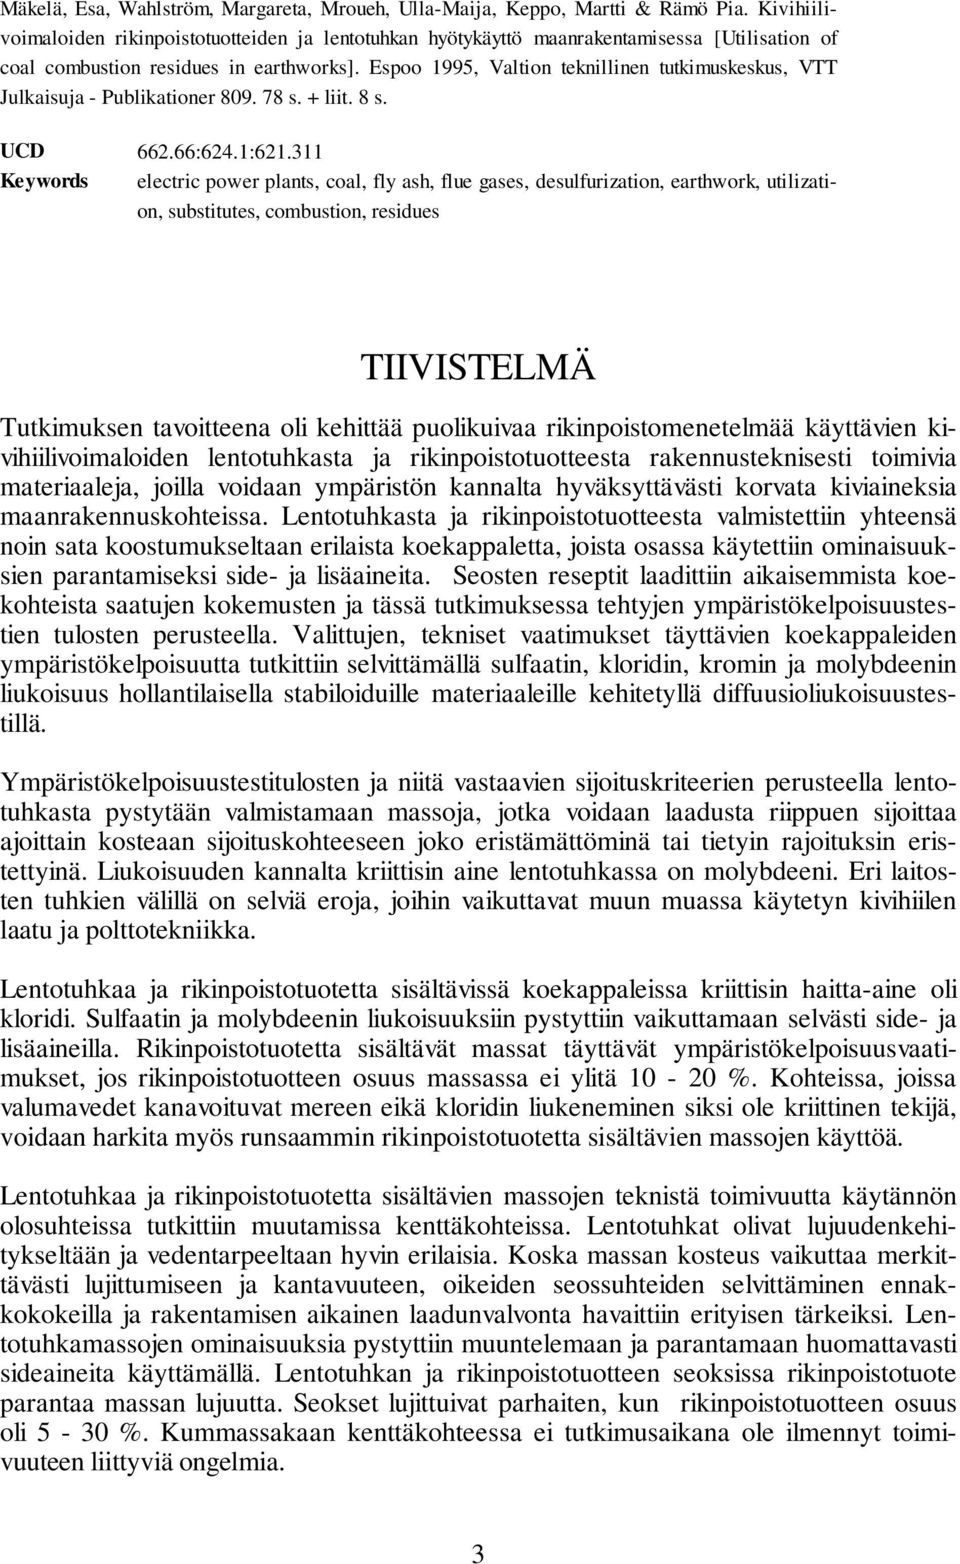 Espoo 1995, Valtion teknillinen tutkimuskeskus, VTT Julkaisuja - Publikationer 809. 78 s. + liit. 8 s. UCD 662.66:624.1:621.